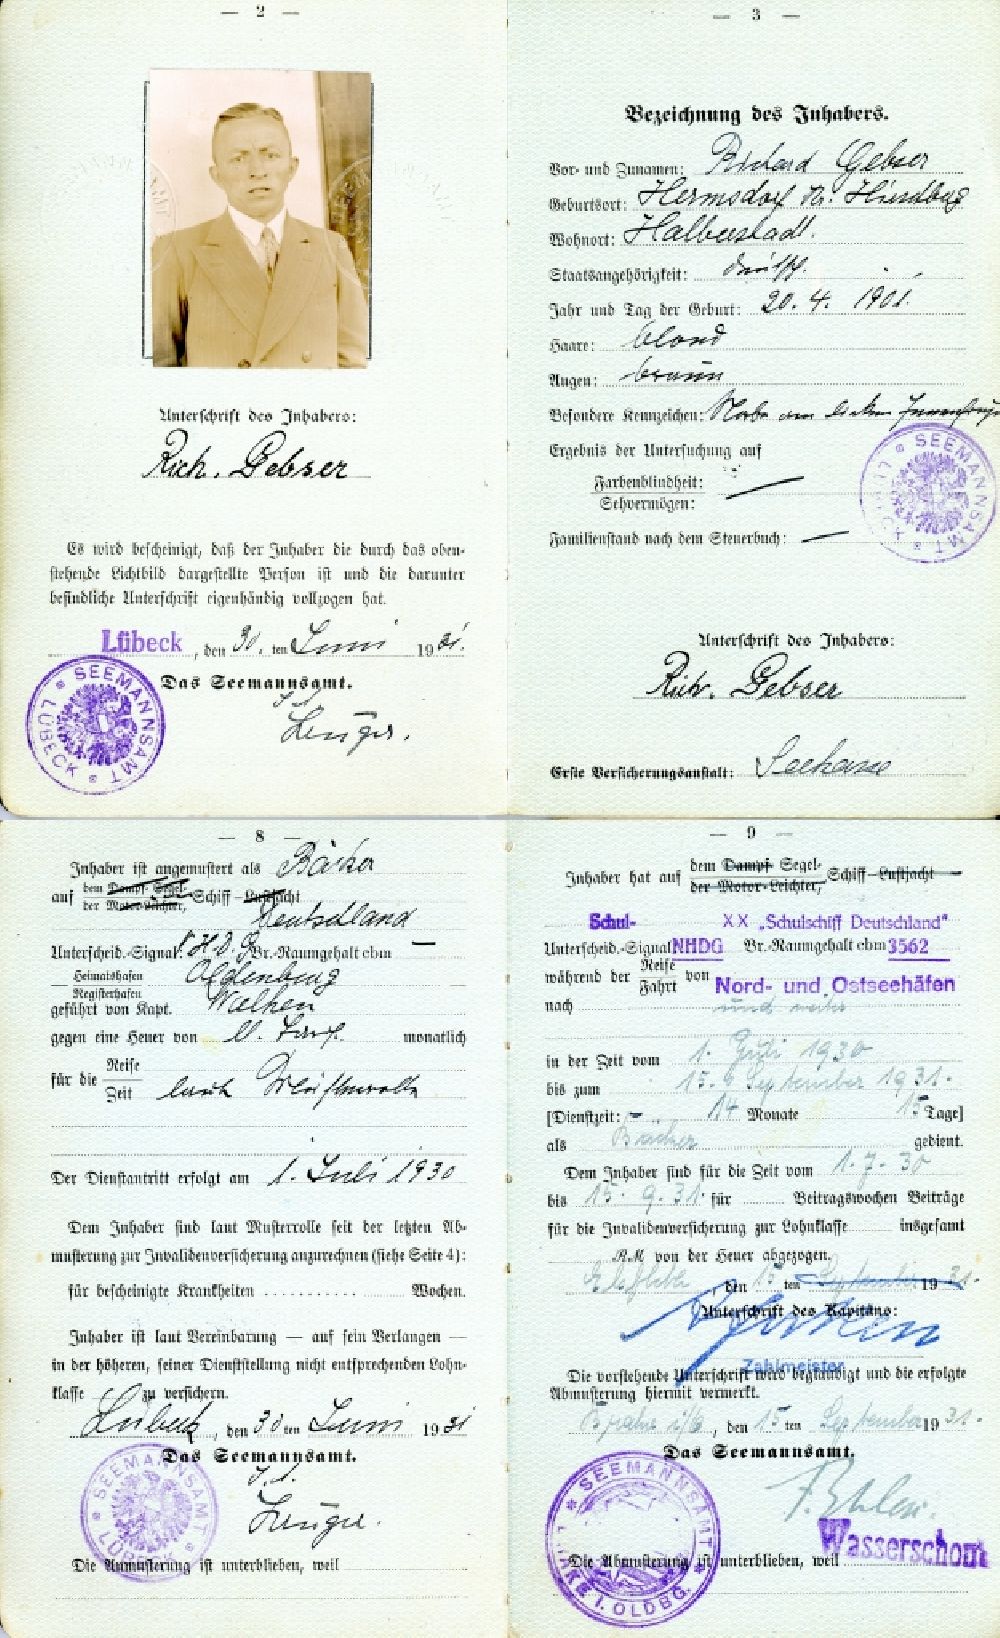 Lübeck: Seefahrtsbuch für Richard Gebser ausgestellt in Lübeck in Schleswig-Holstein in Deutschland